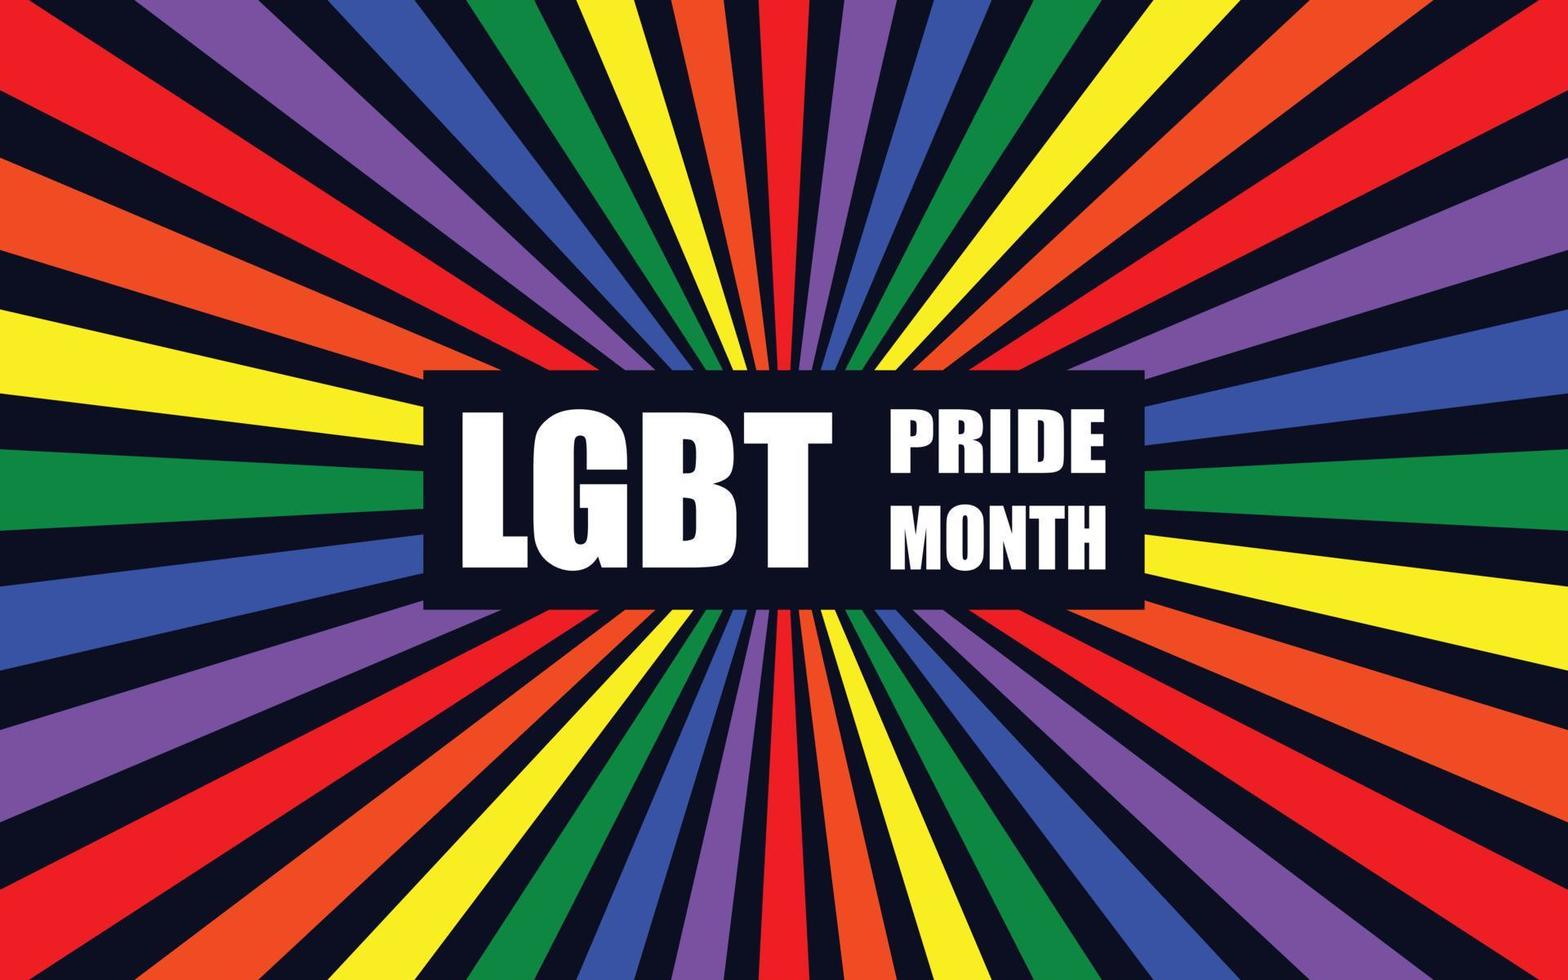 concepto del día del orgullo lgbtq, diseño de afiches del mes del orgullo lgbt. diseño de fondo organizado en arco iris, colores lgbt. vector